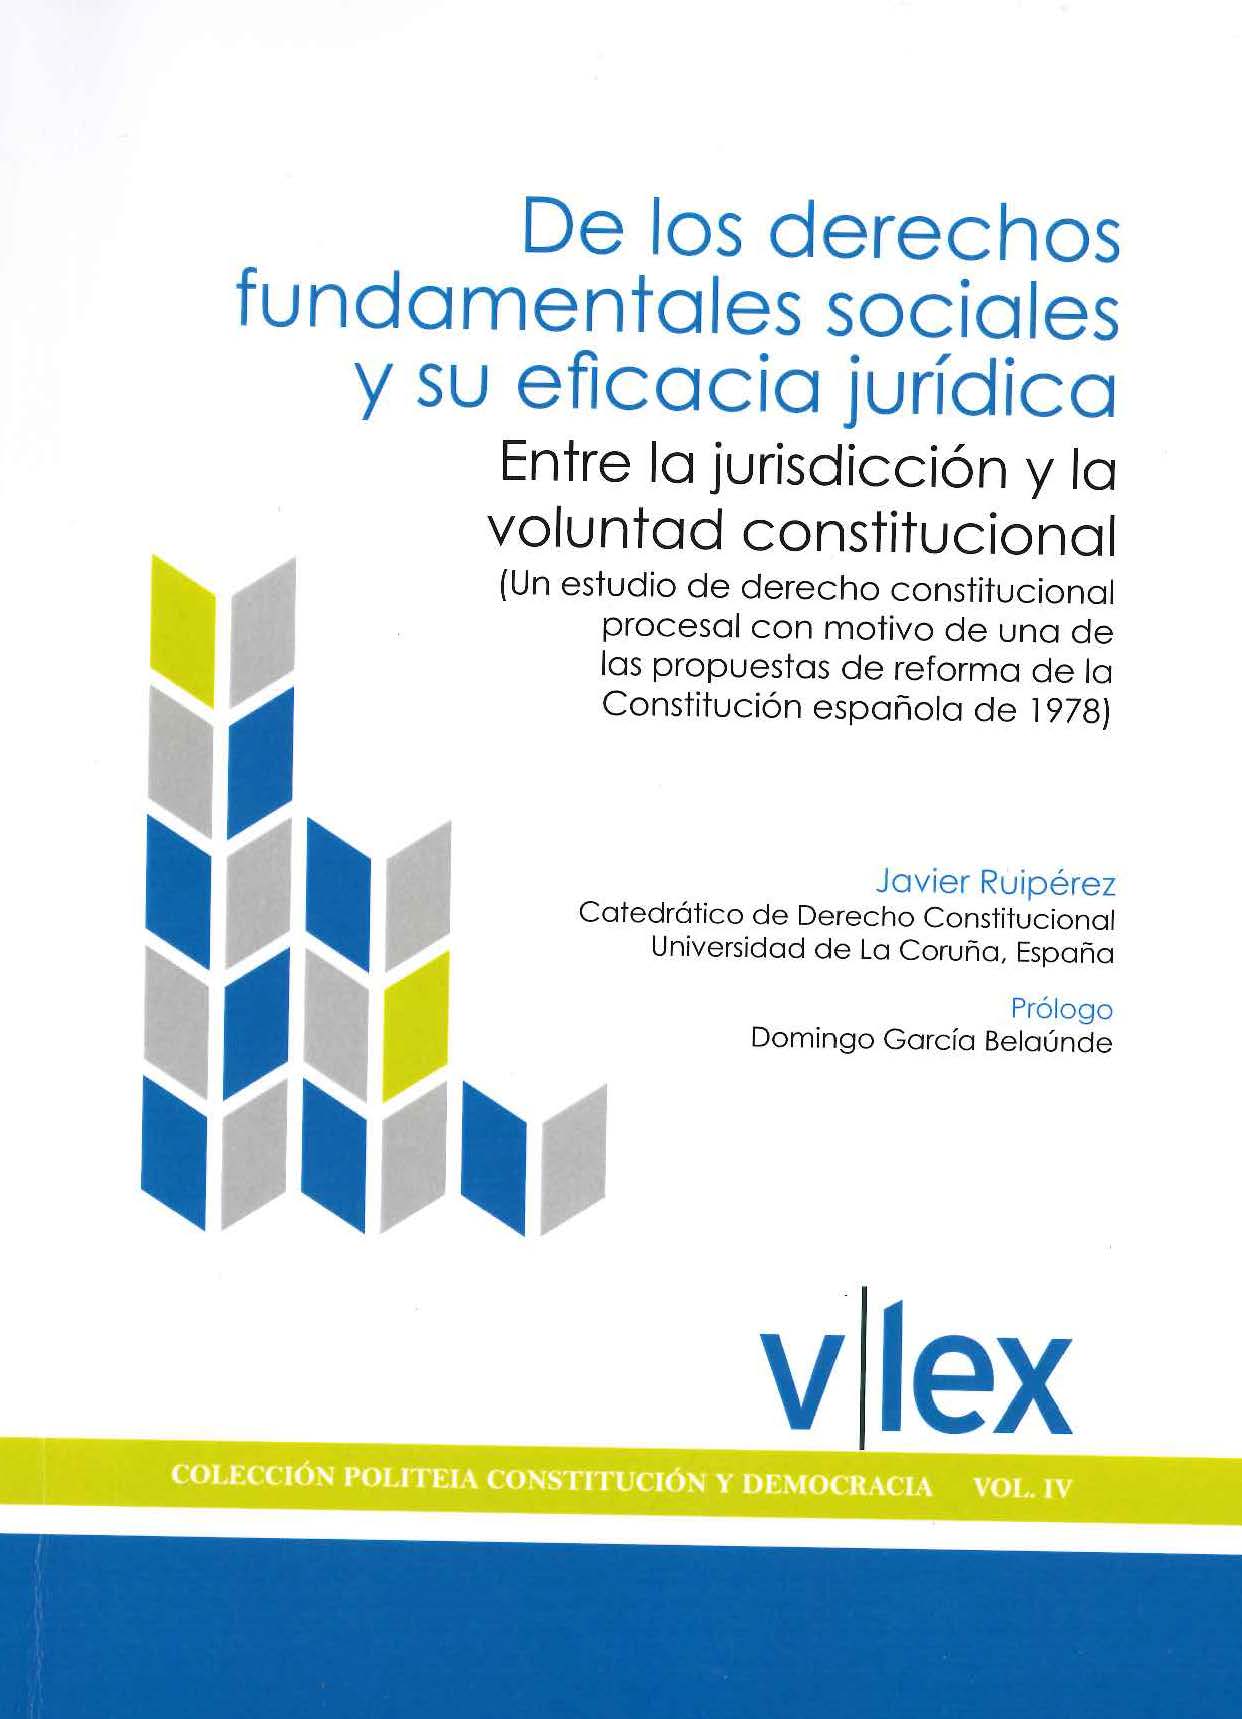 Imagen de portada del libro De los derechos fundamentales sociales y su eficacia jurídica